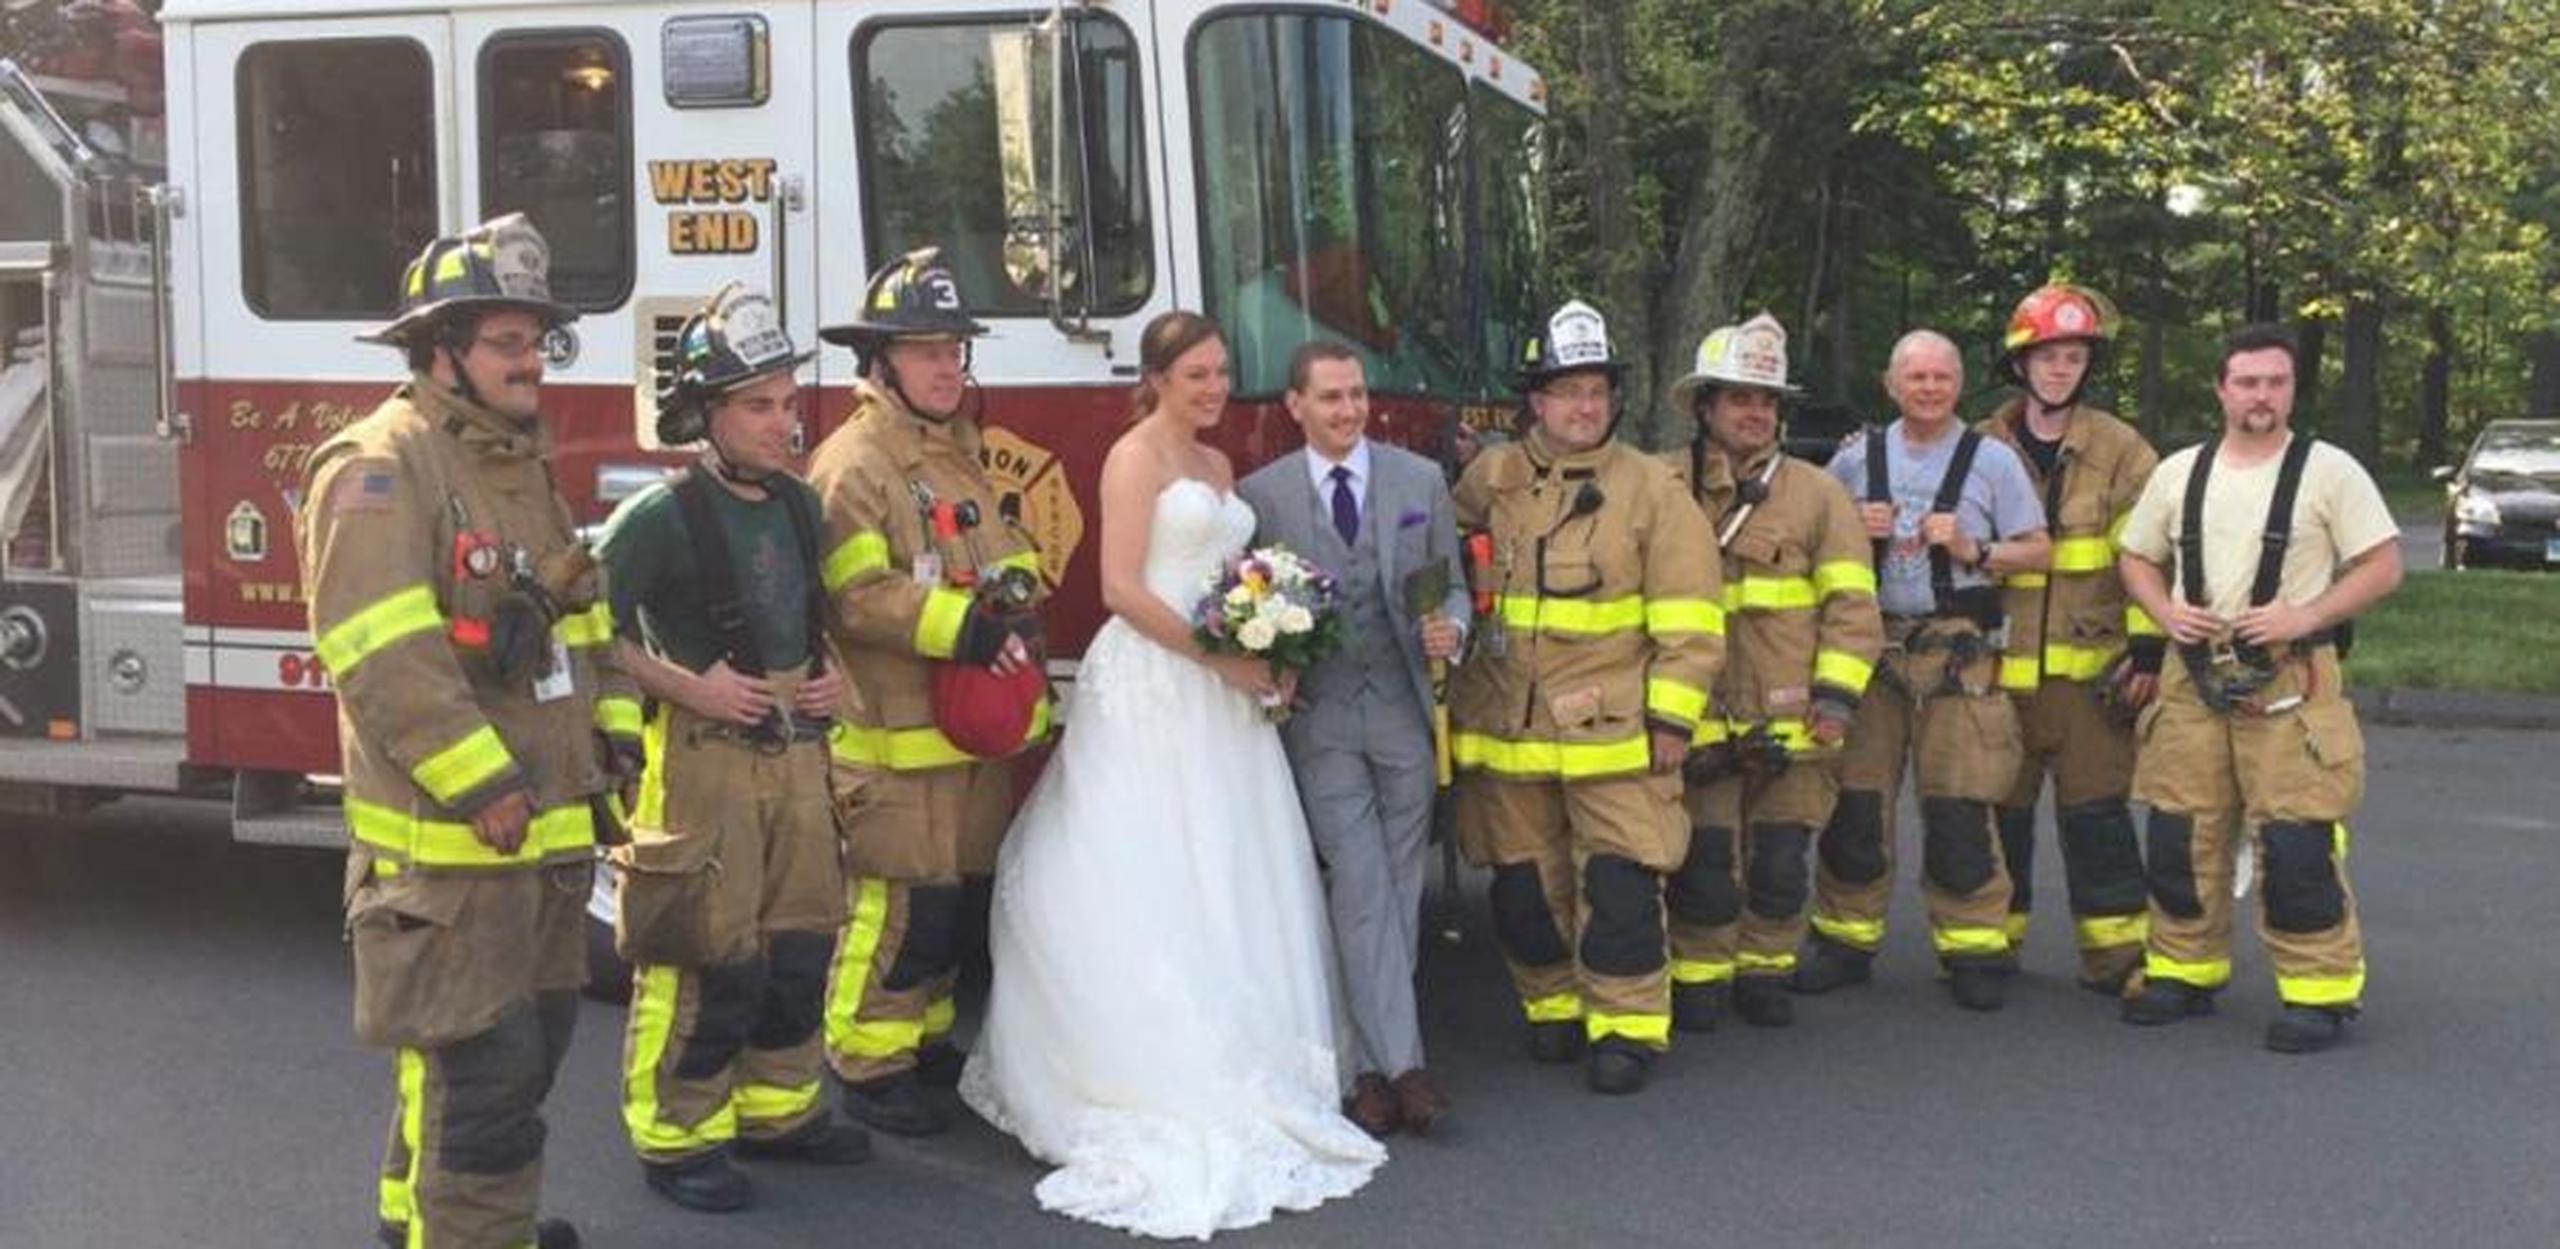 Las imágenes subidas a Facebook mostraban a la pareja sonriendo en el camión de bomberos. (AP)